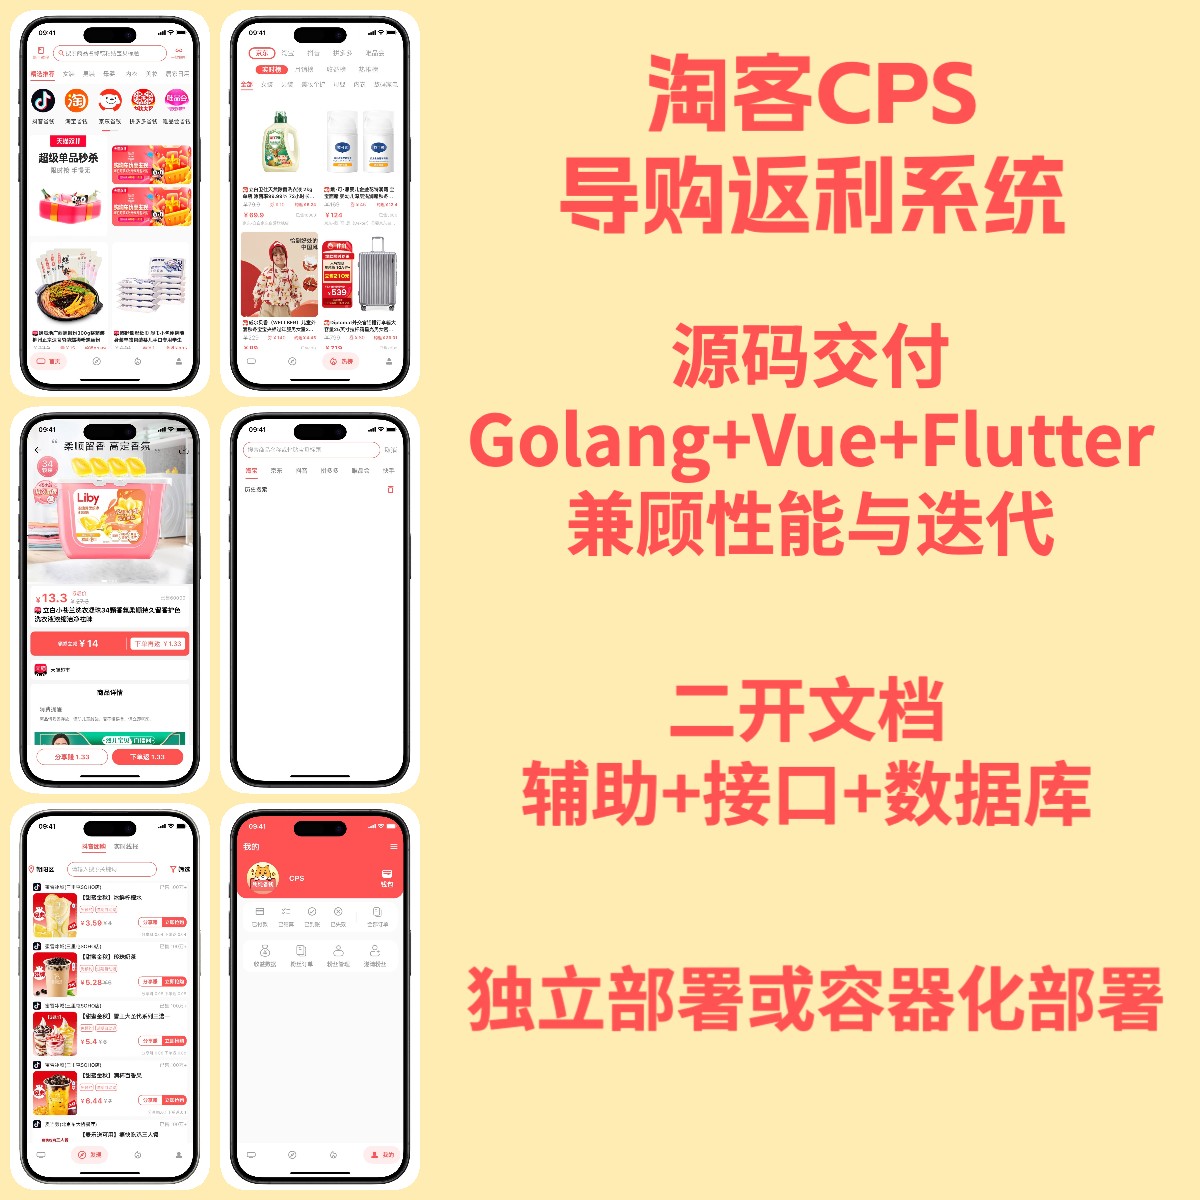 基于Golang+Vue+Flutter开发的CPS淘客淘宝客抖客导购系统